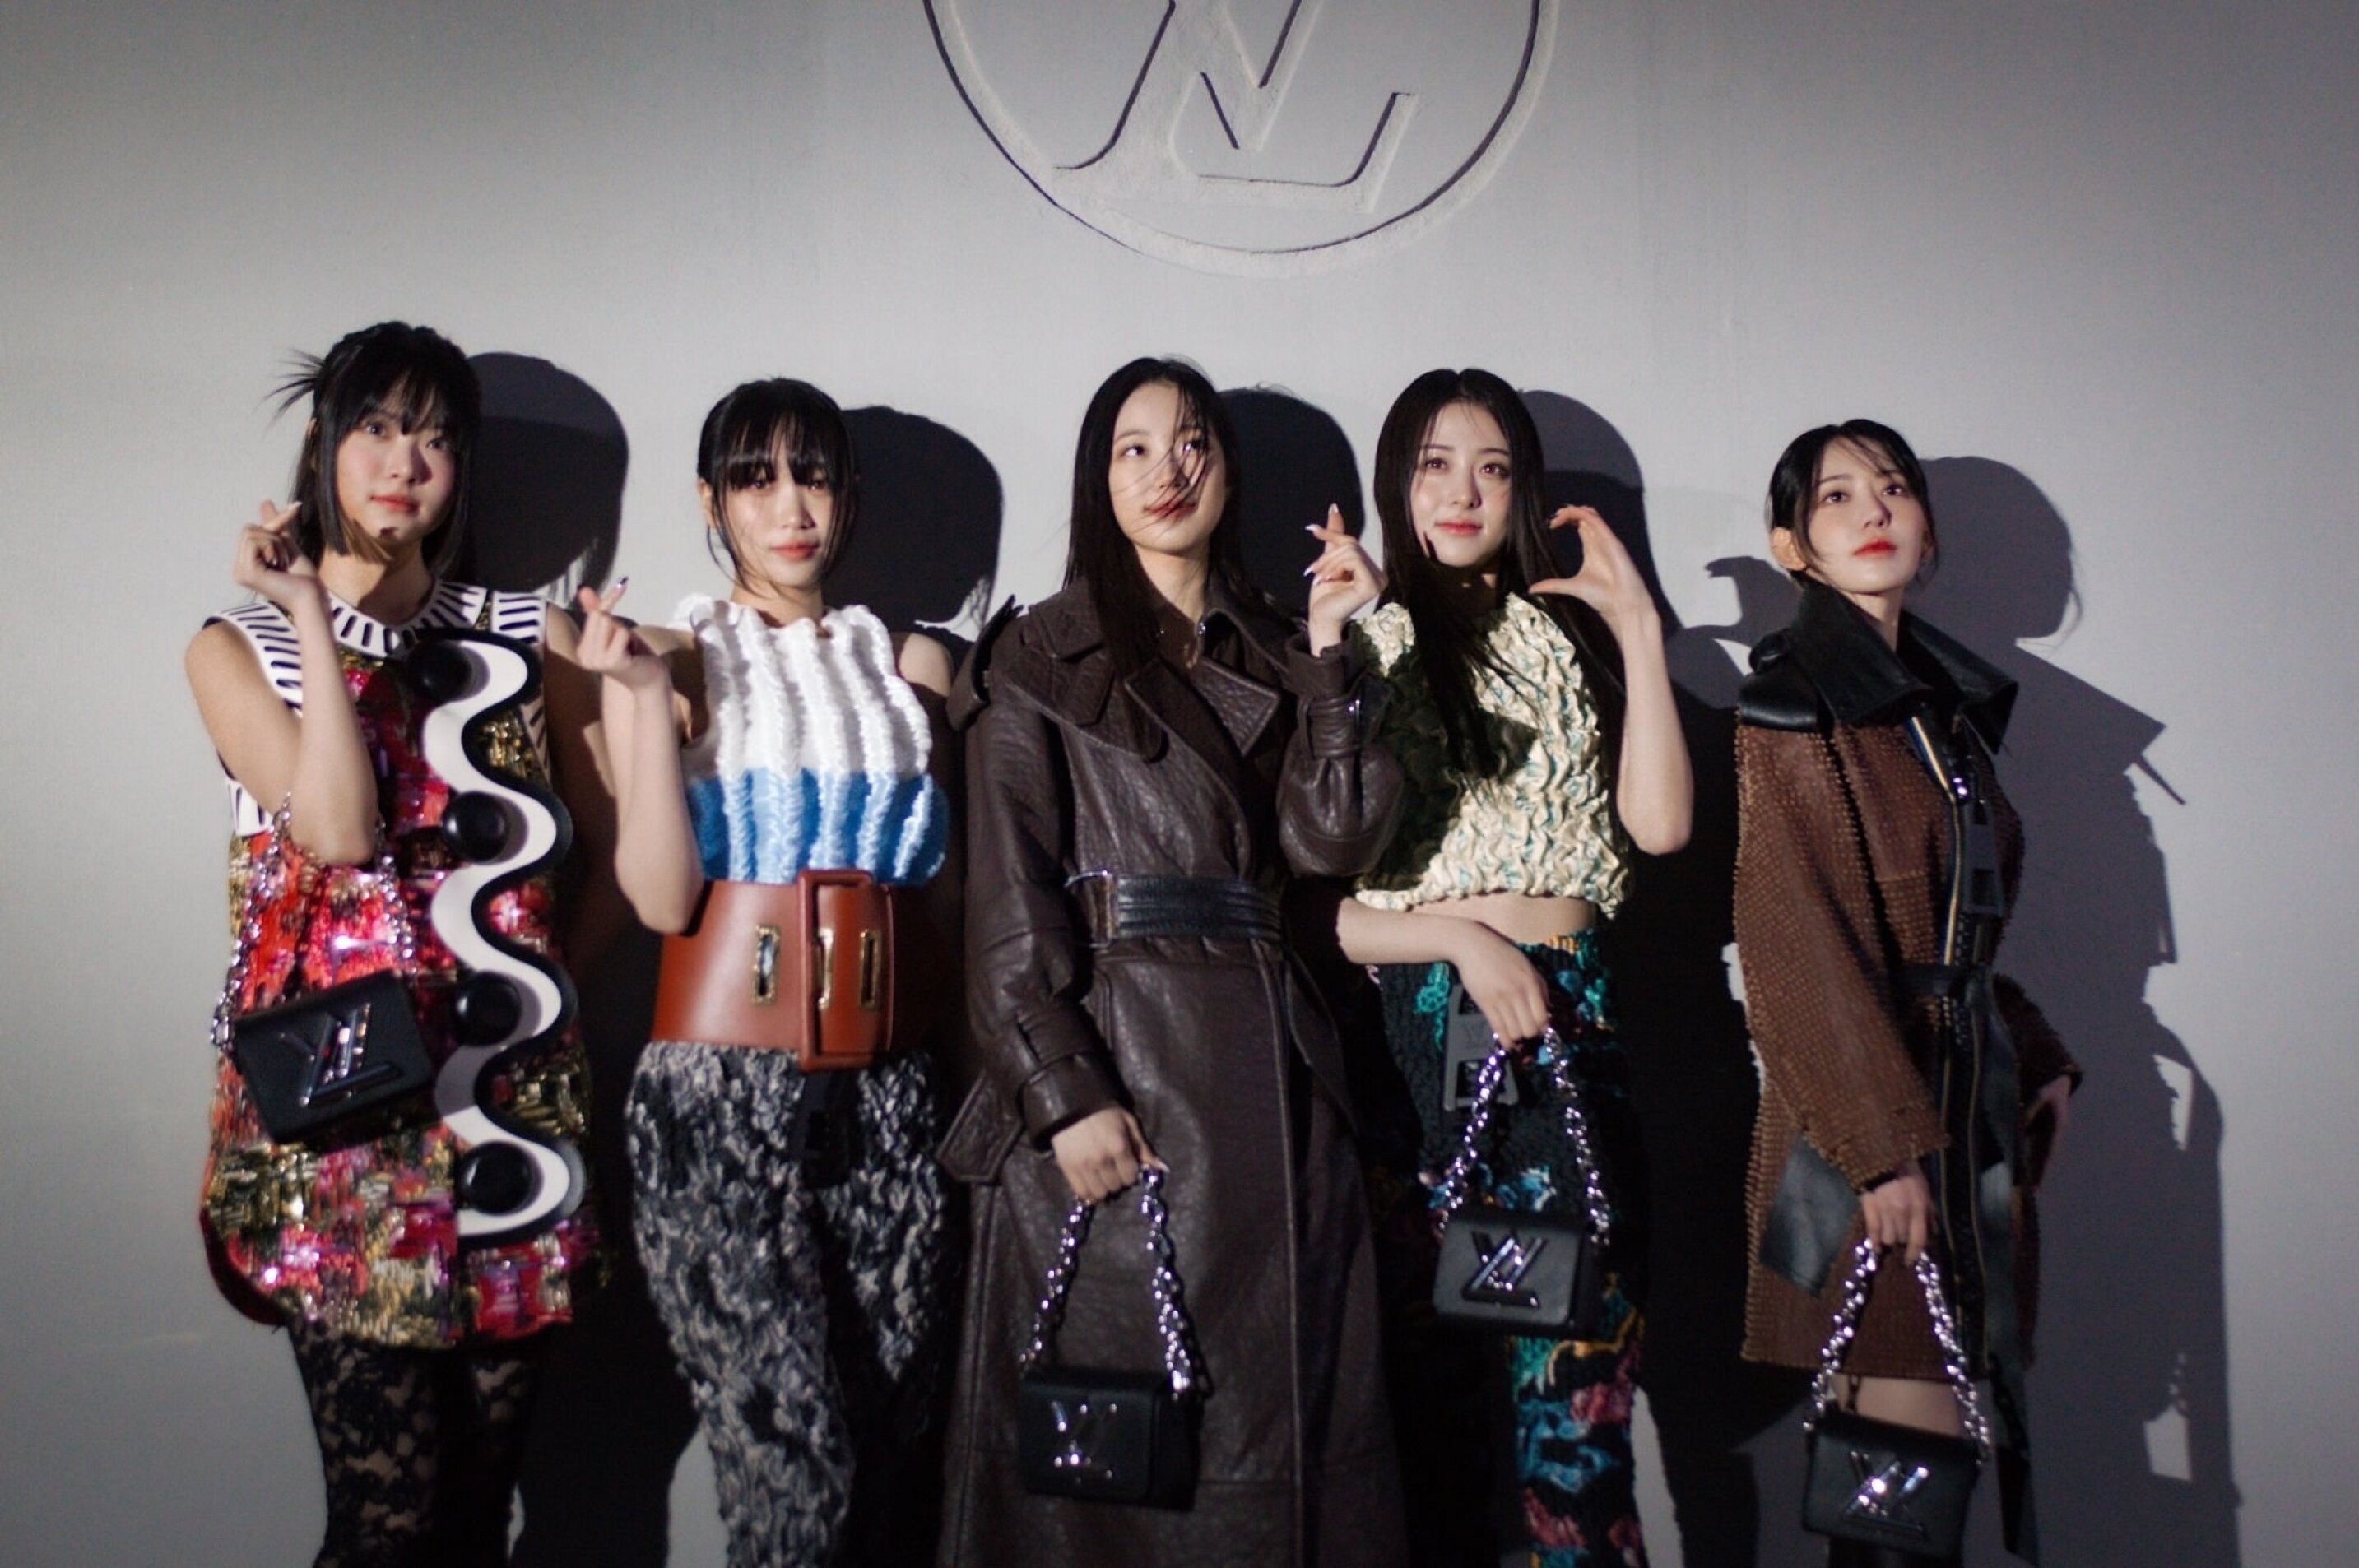 Louis Vuitton Women's Fashion Show In Seoul